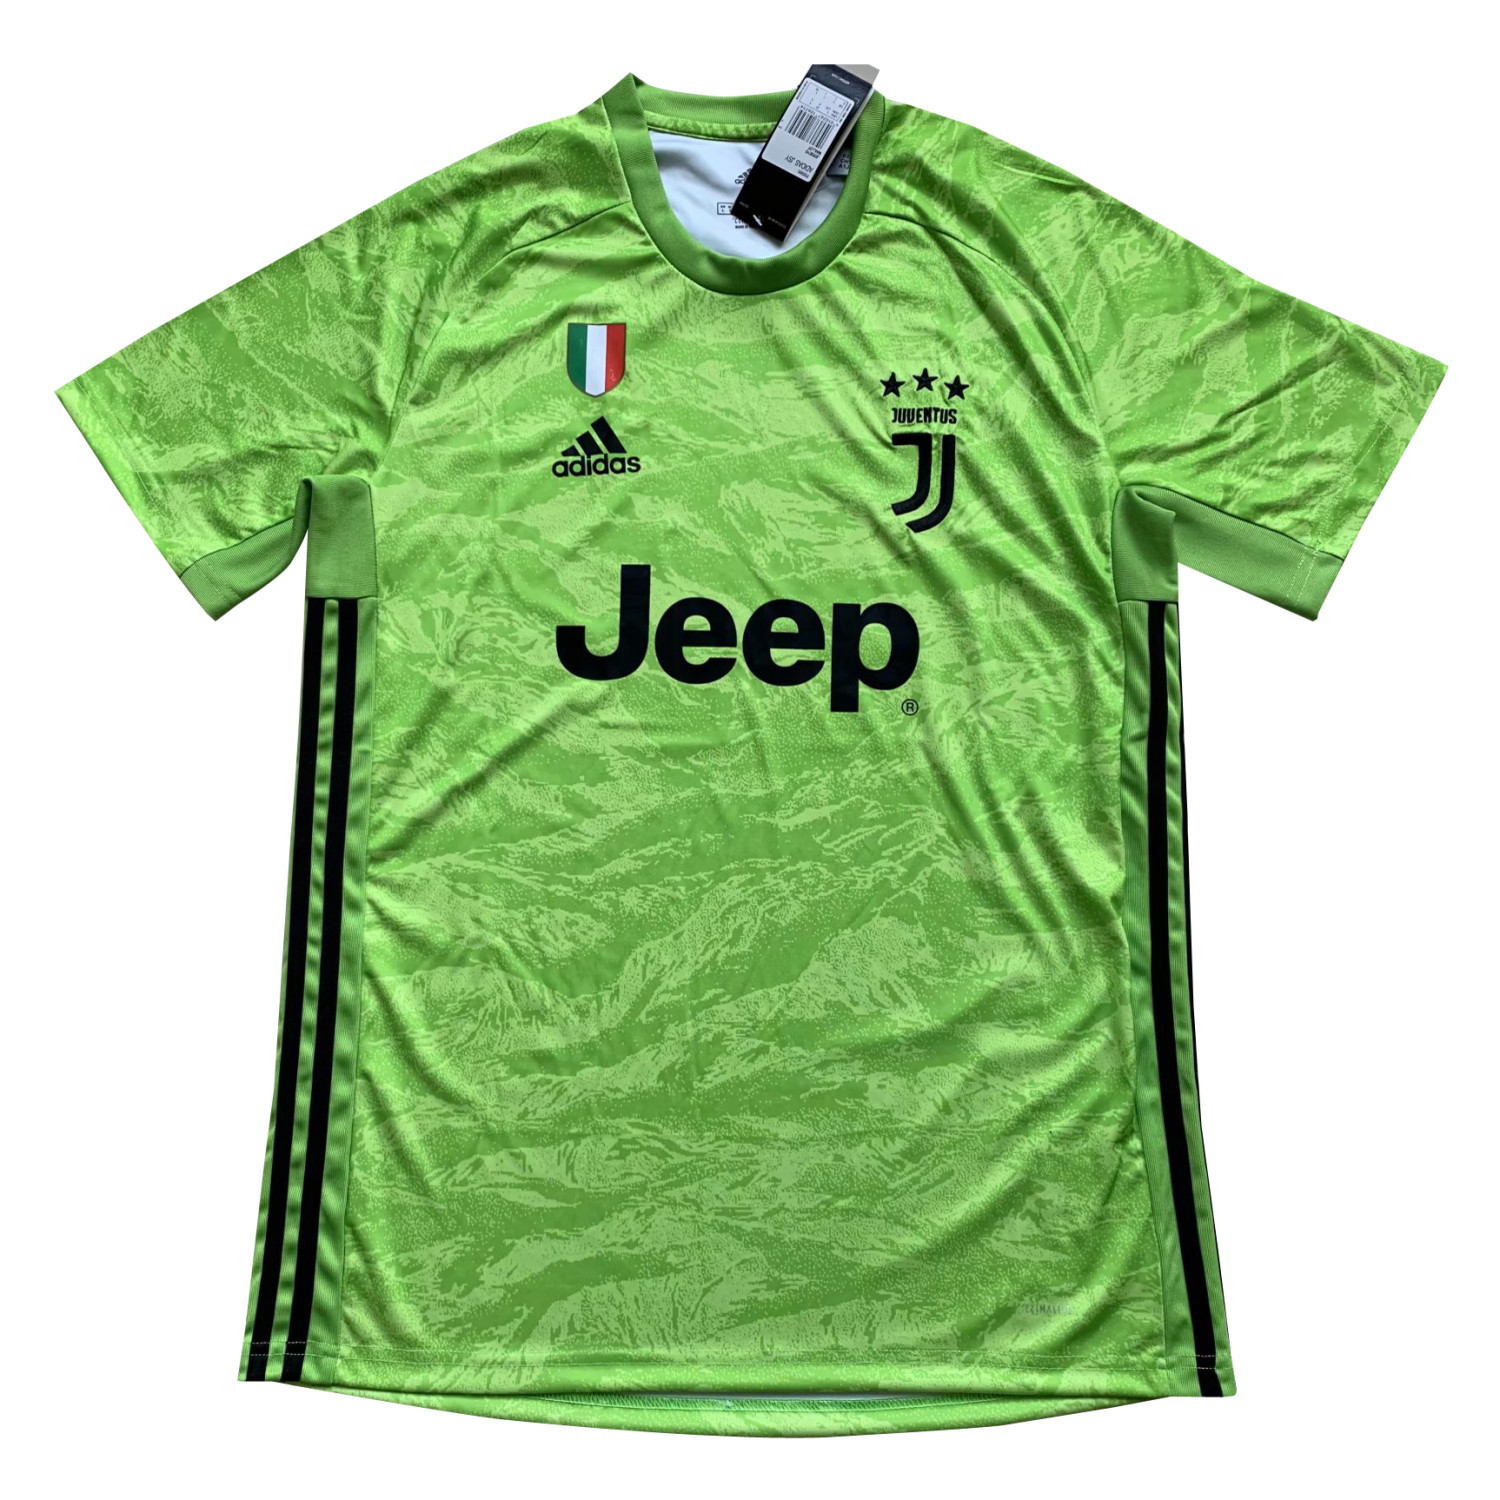 US$ 15.8 - Juventus Goalkeeper Green Jersey Mens 2019/20 ...